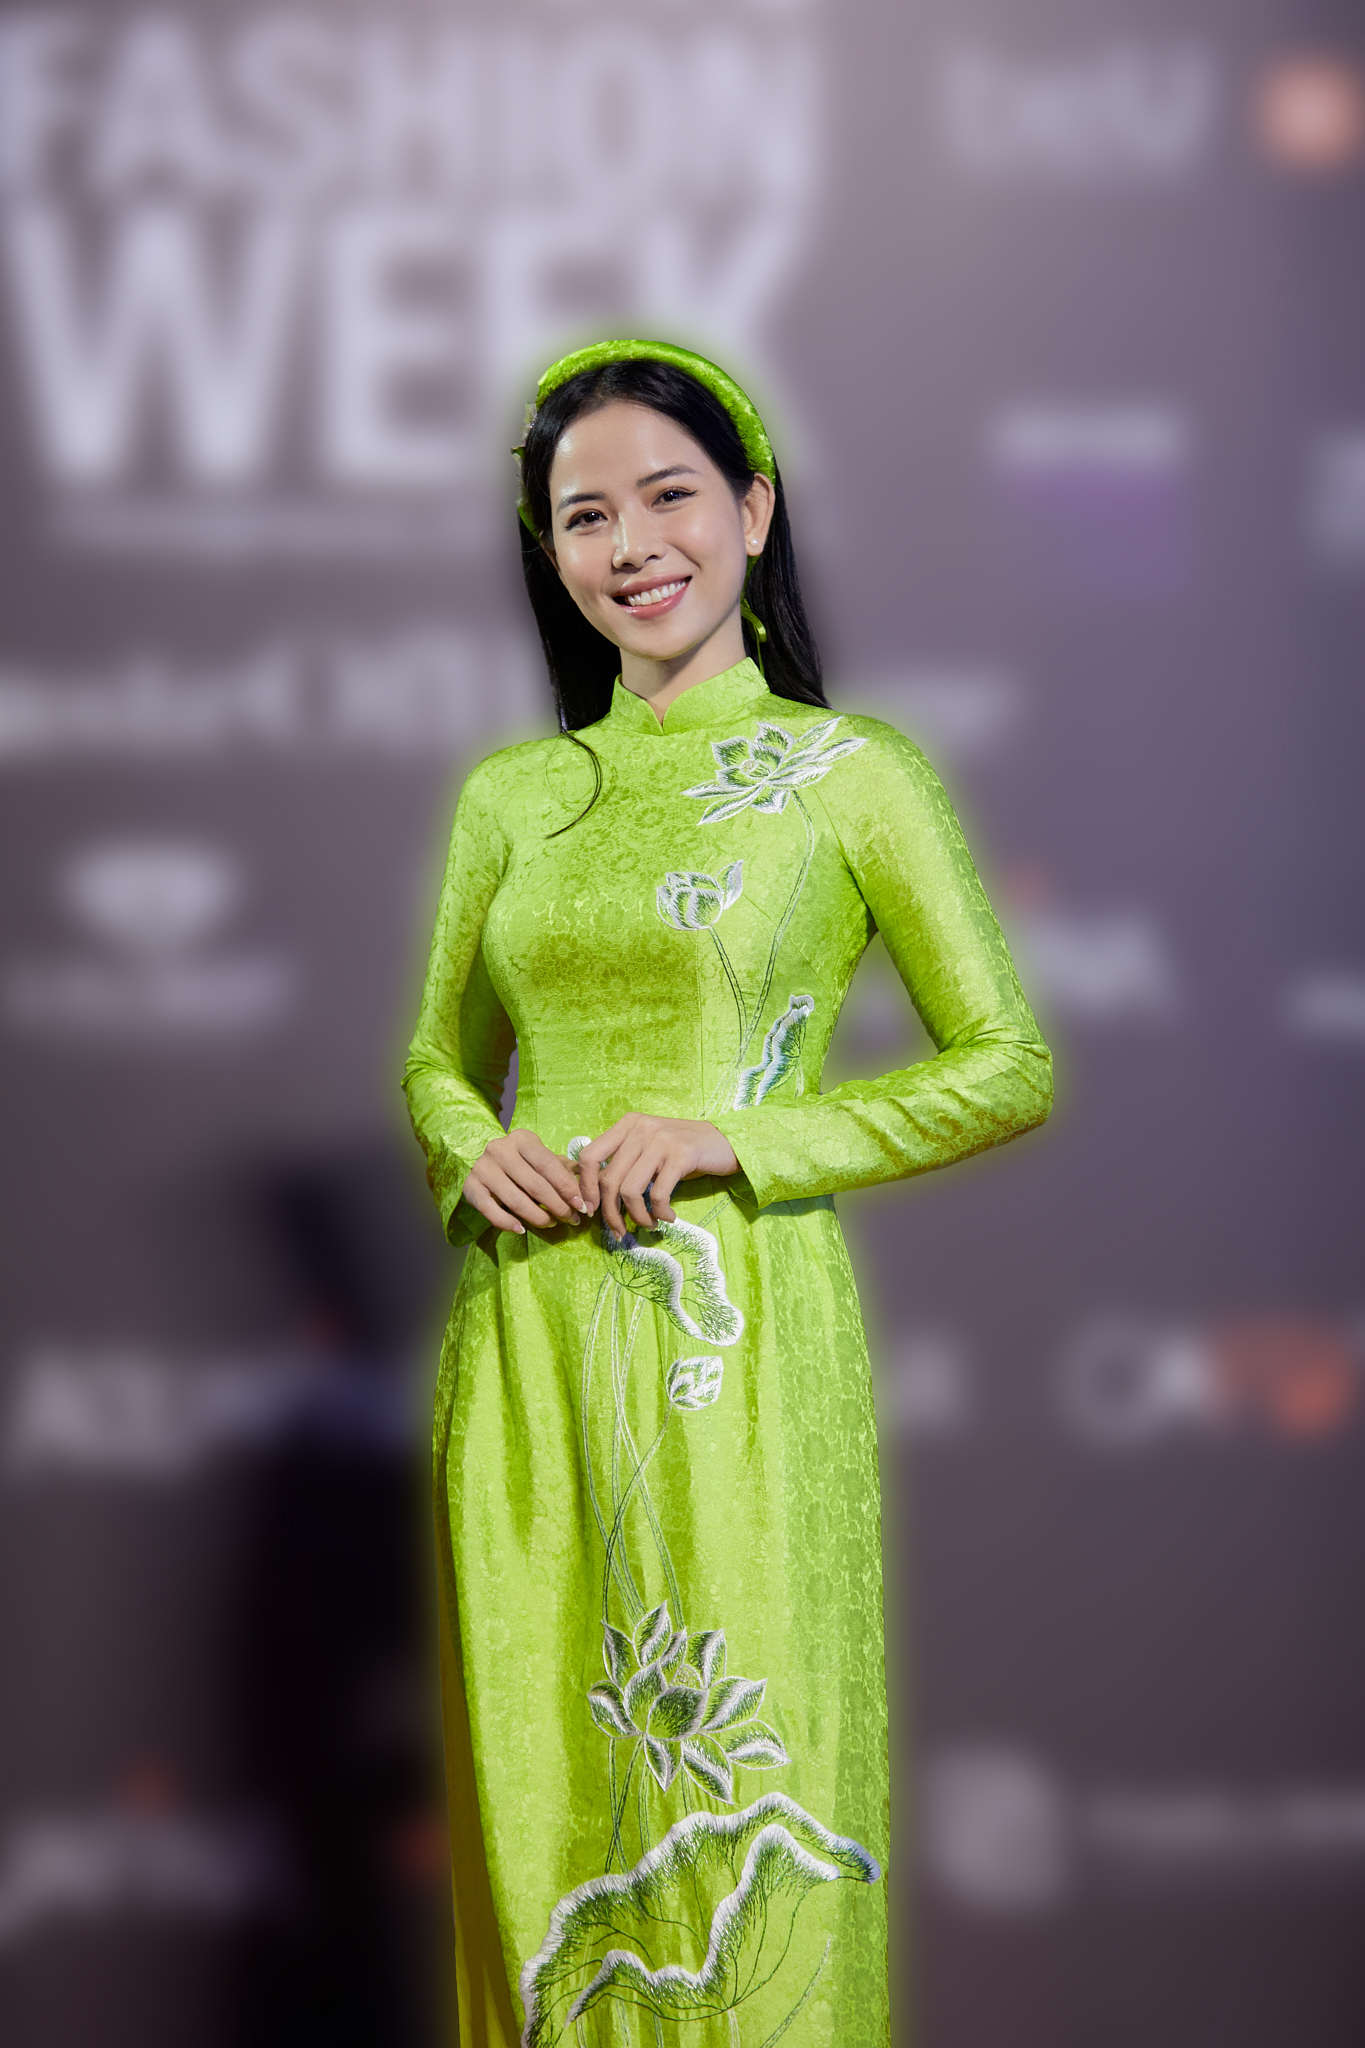 Vợ chồng Bình An - Phương nga hội ngộ cùng dàn diễn viên VTV trên thảm đỏ mở màn Tuần lễ thời trang - Ảnh 10.